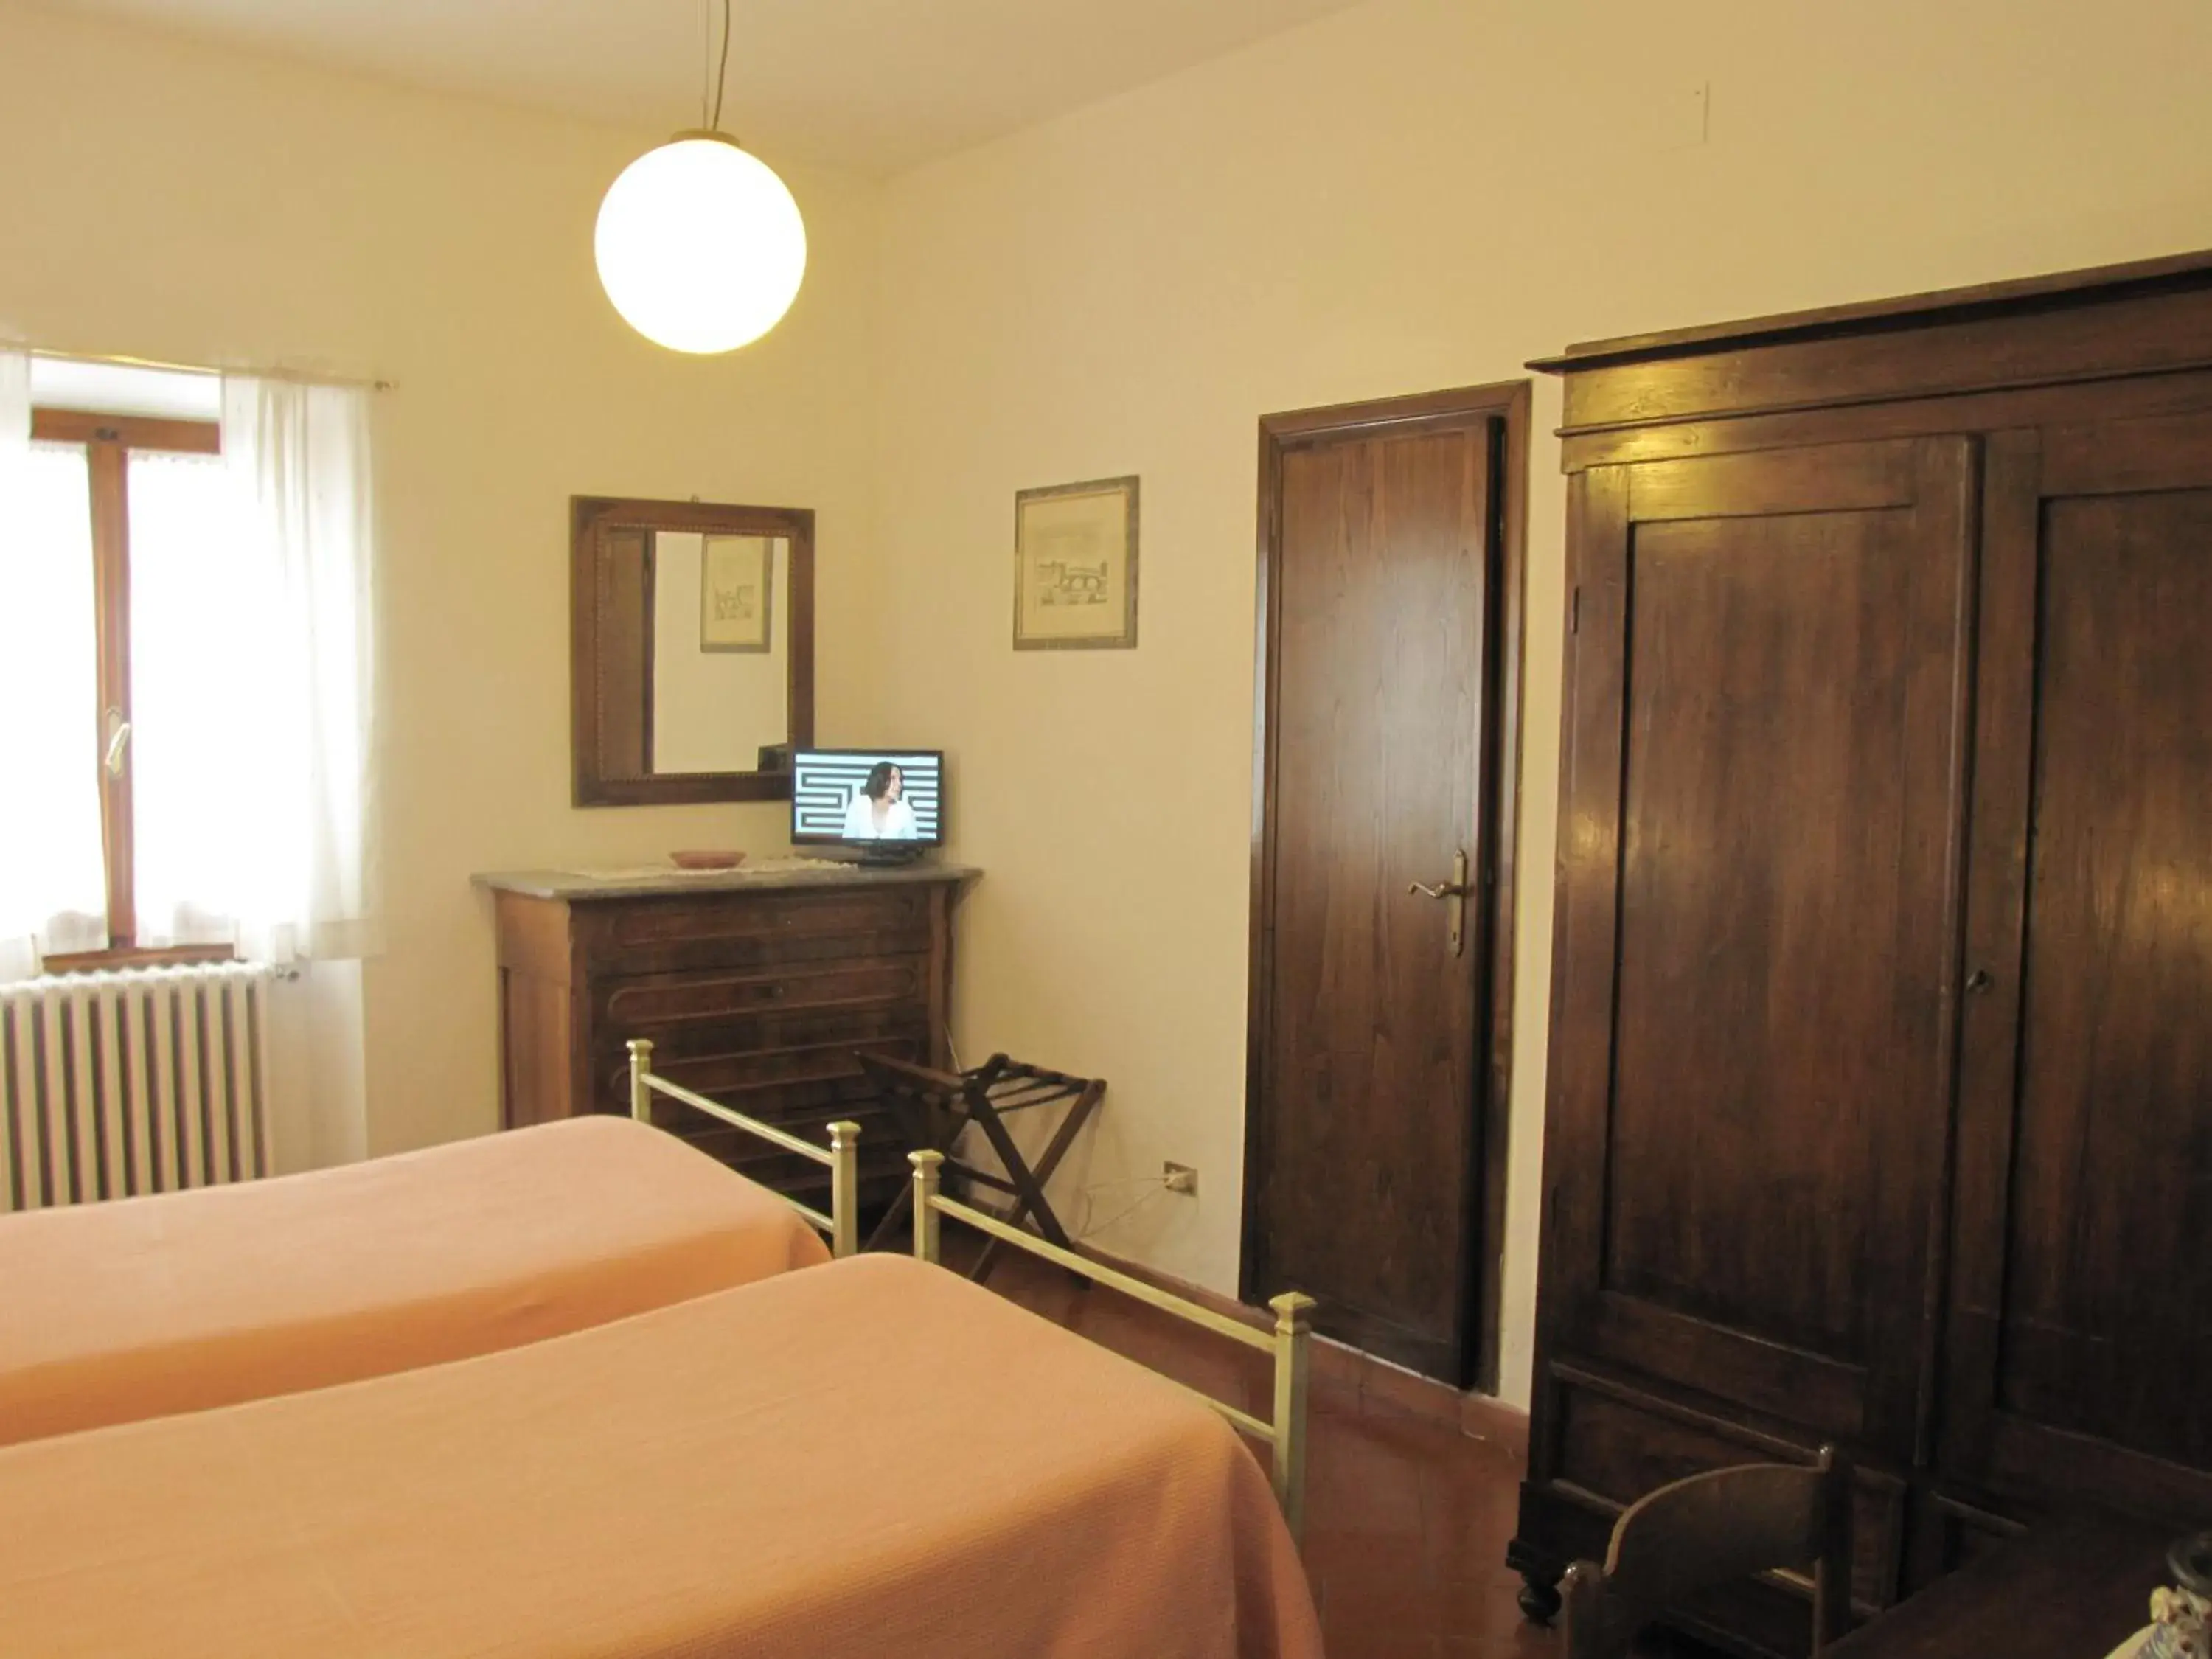 Bedroom, Room Photo in Residence Casprini da Omero